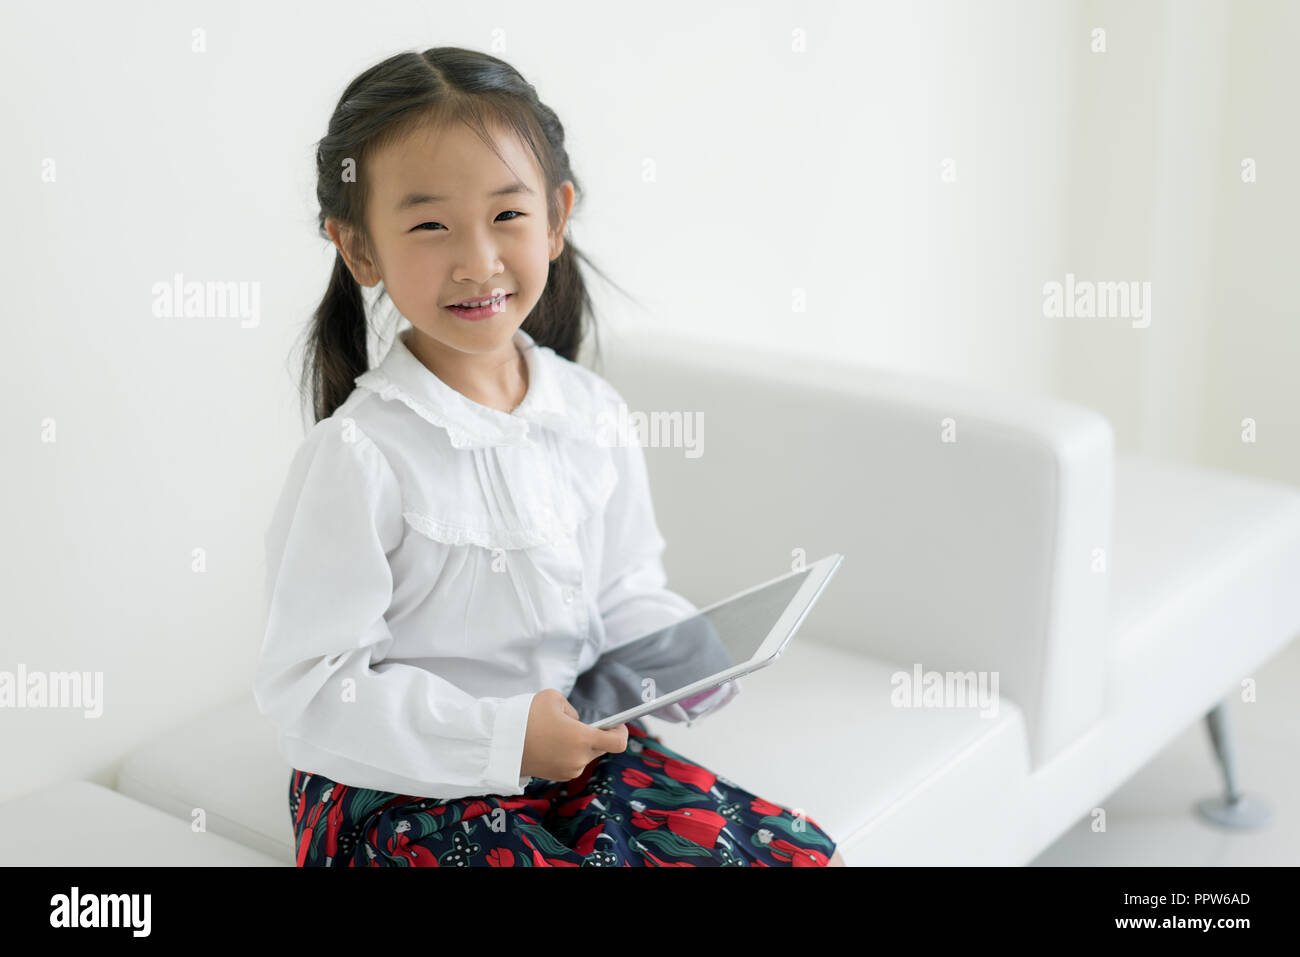 Petite fille asiatique jouant digital tablet. L'éducation, de la science, de la technologie, les enfants et personnes concept. Banque D'Images